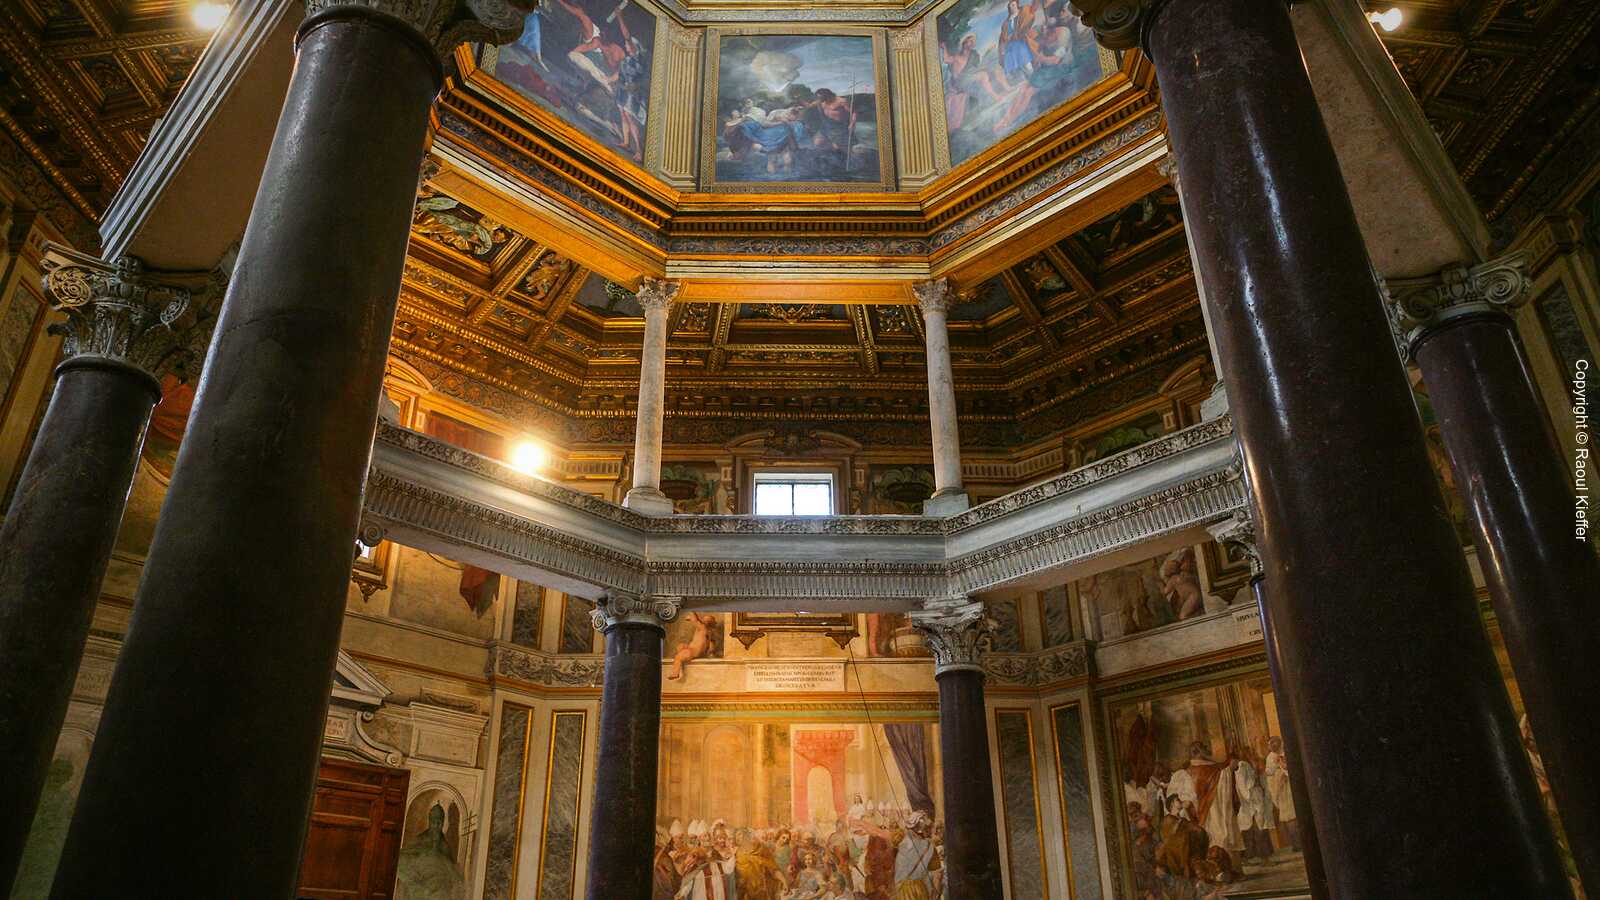 Archbasilica San Giovanni in Laterano